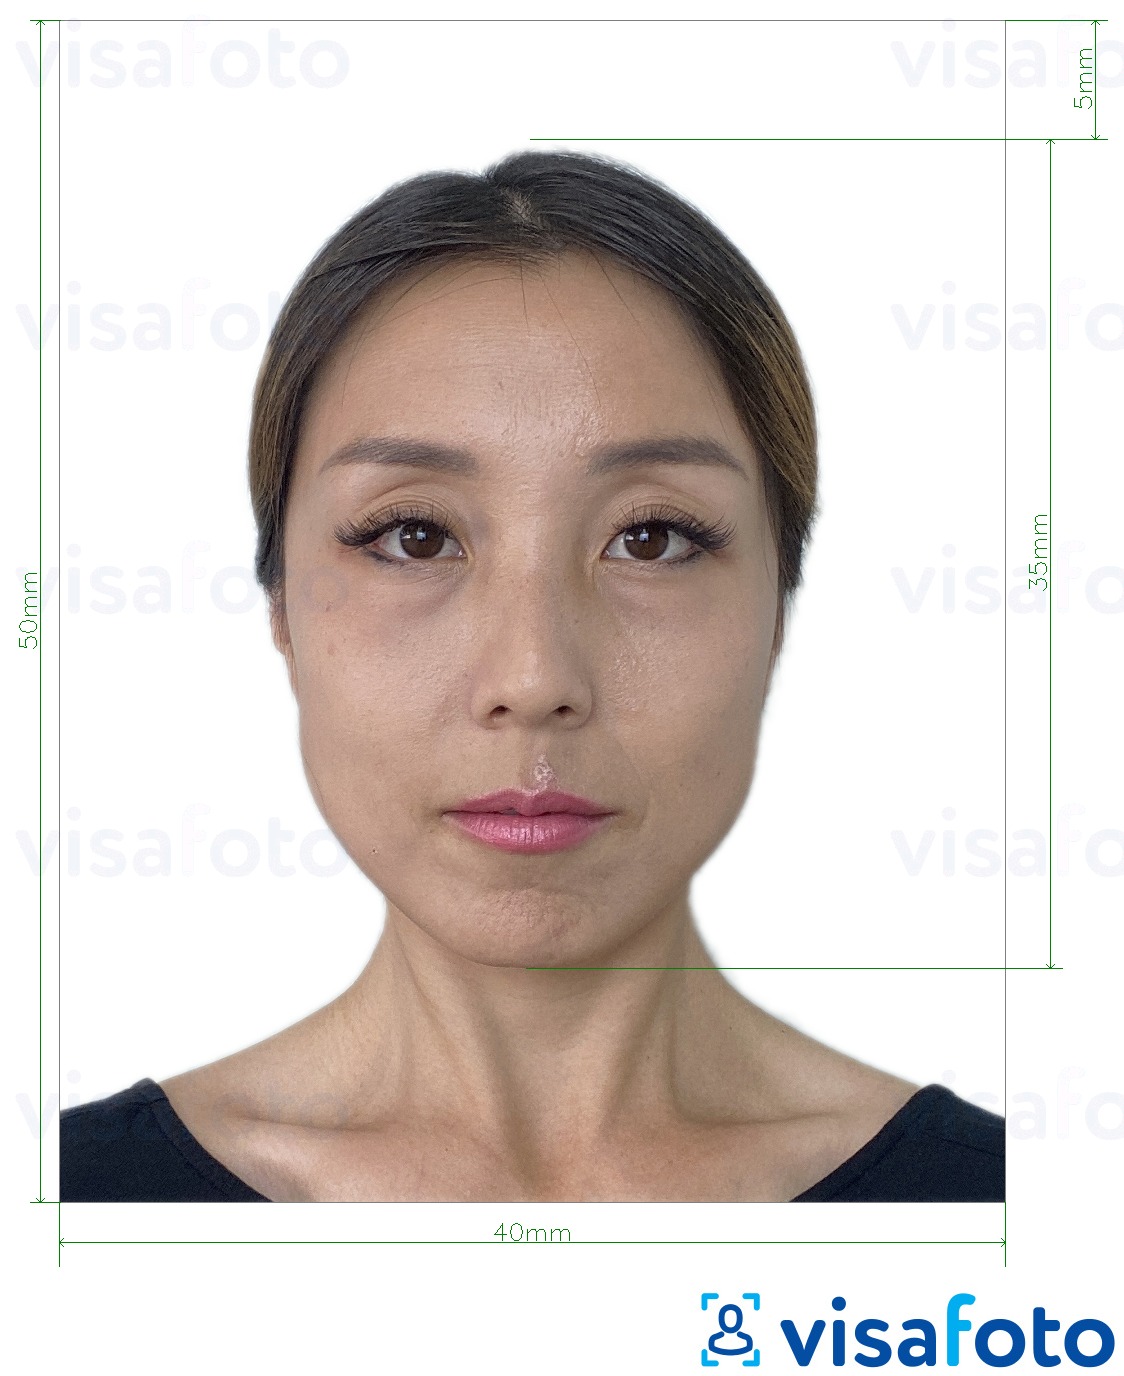 Tam boyut belirtimi olan Hong Kong Passport 40x50 mm (4x5 cm) için fotoğraf örneği